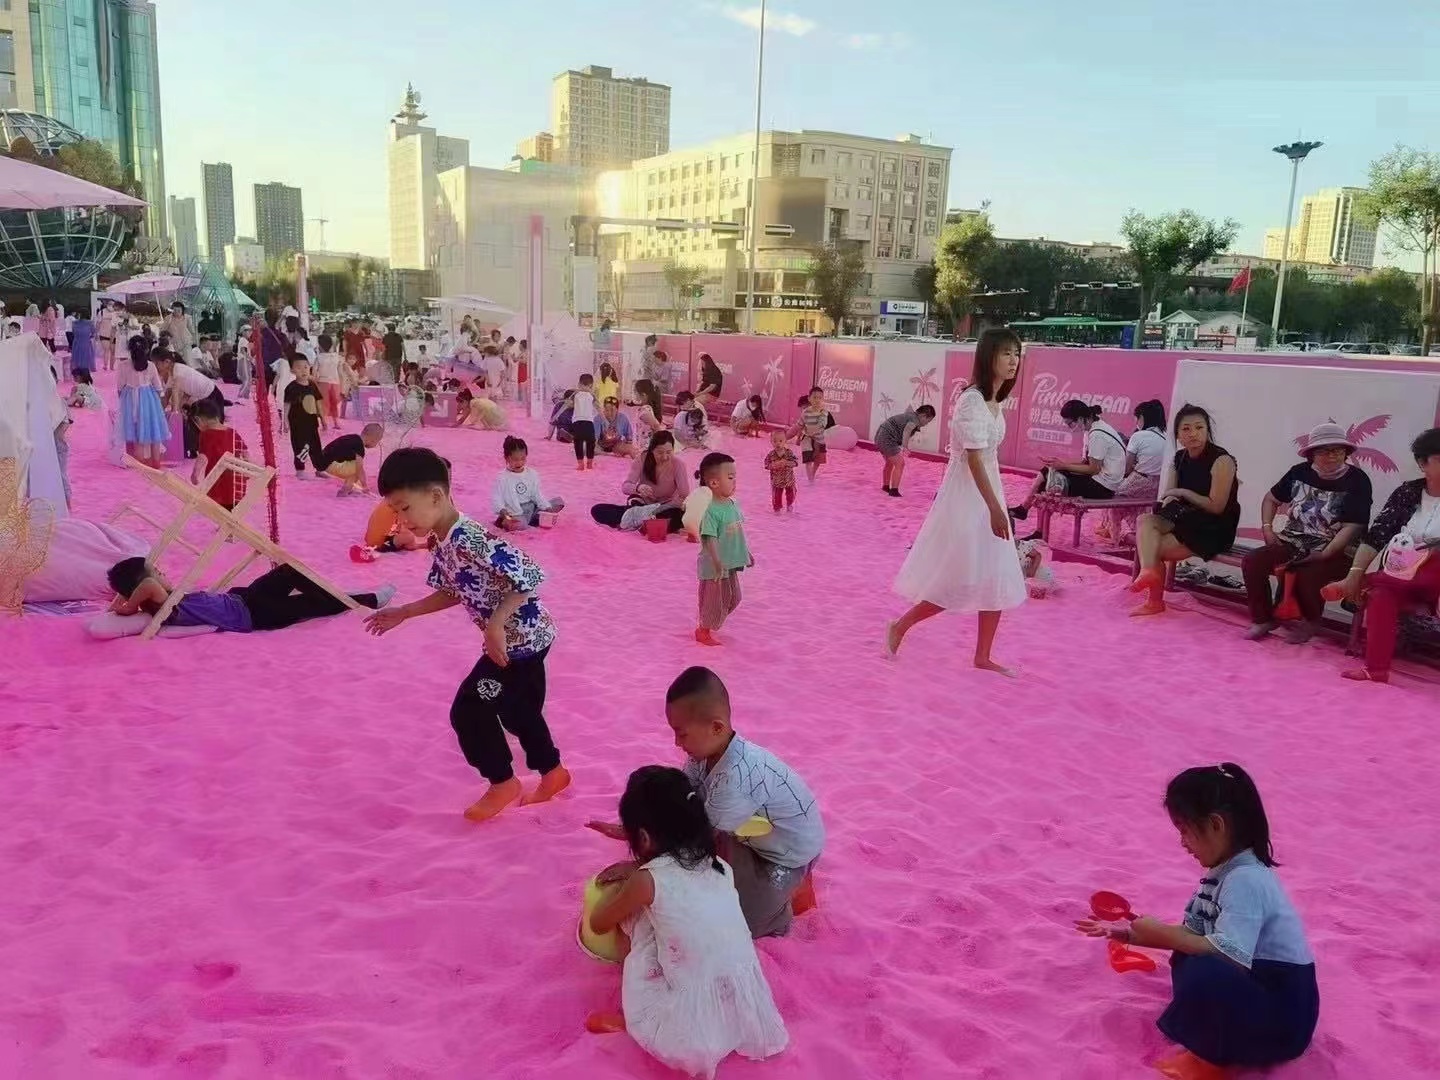 粉红沙滩方案粉红沙滩工厂直销粉红沙滩100平出租出售 粉红沙滩